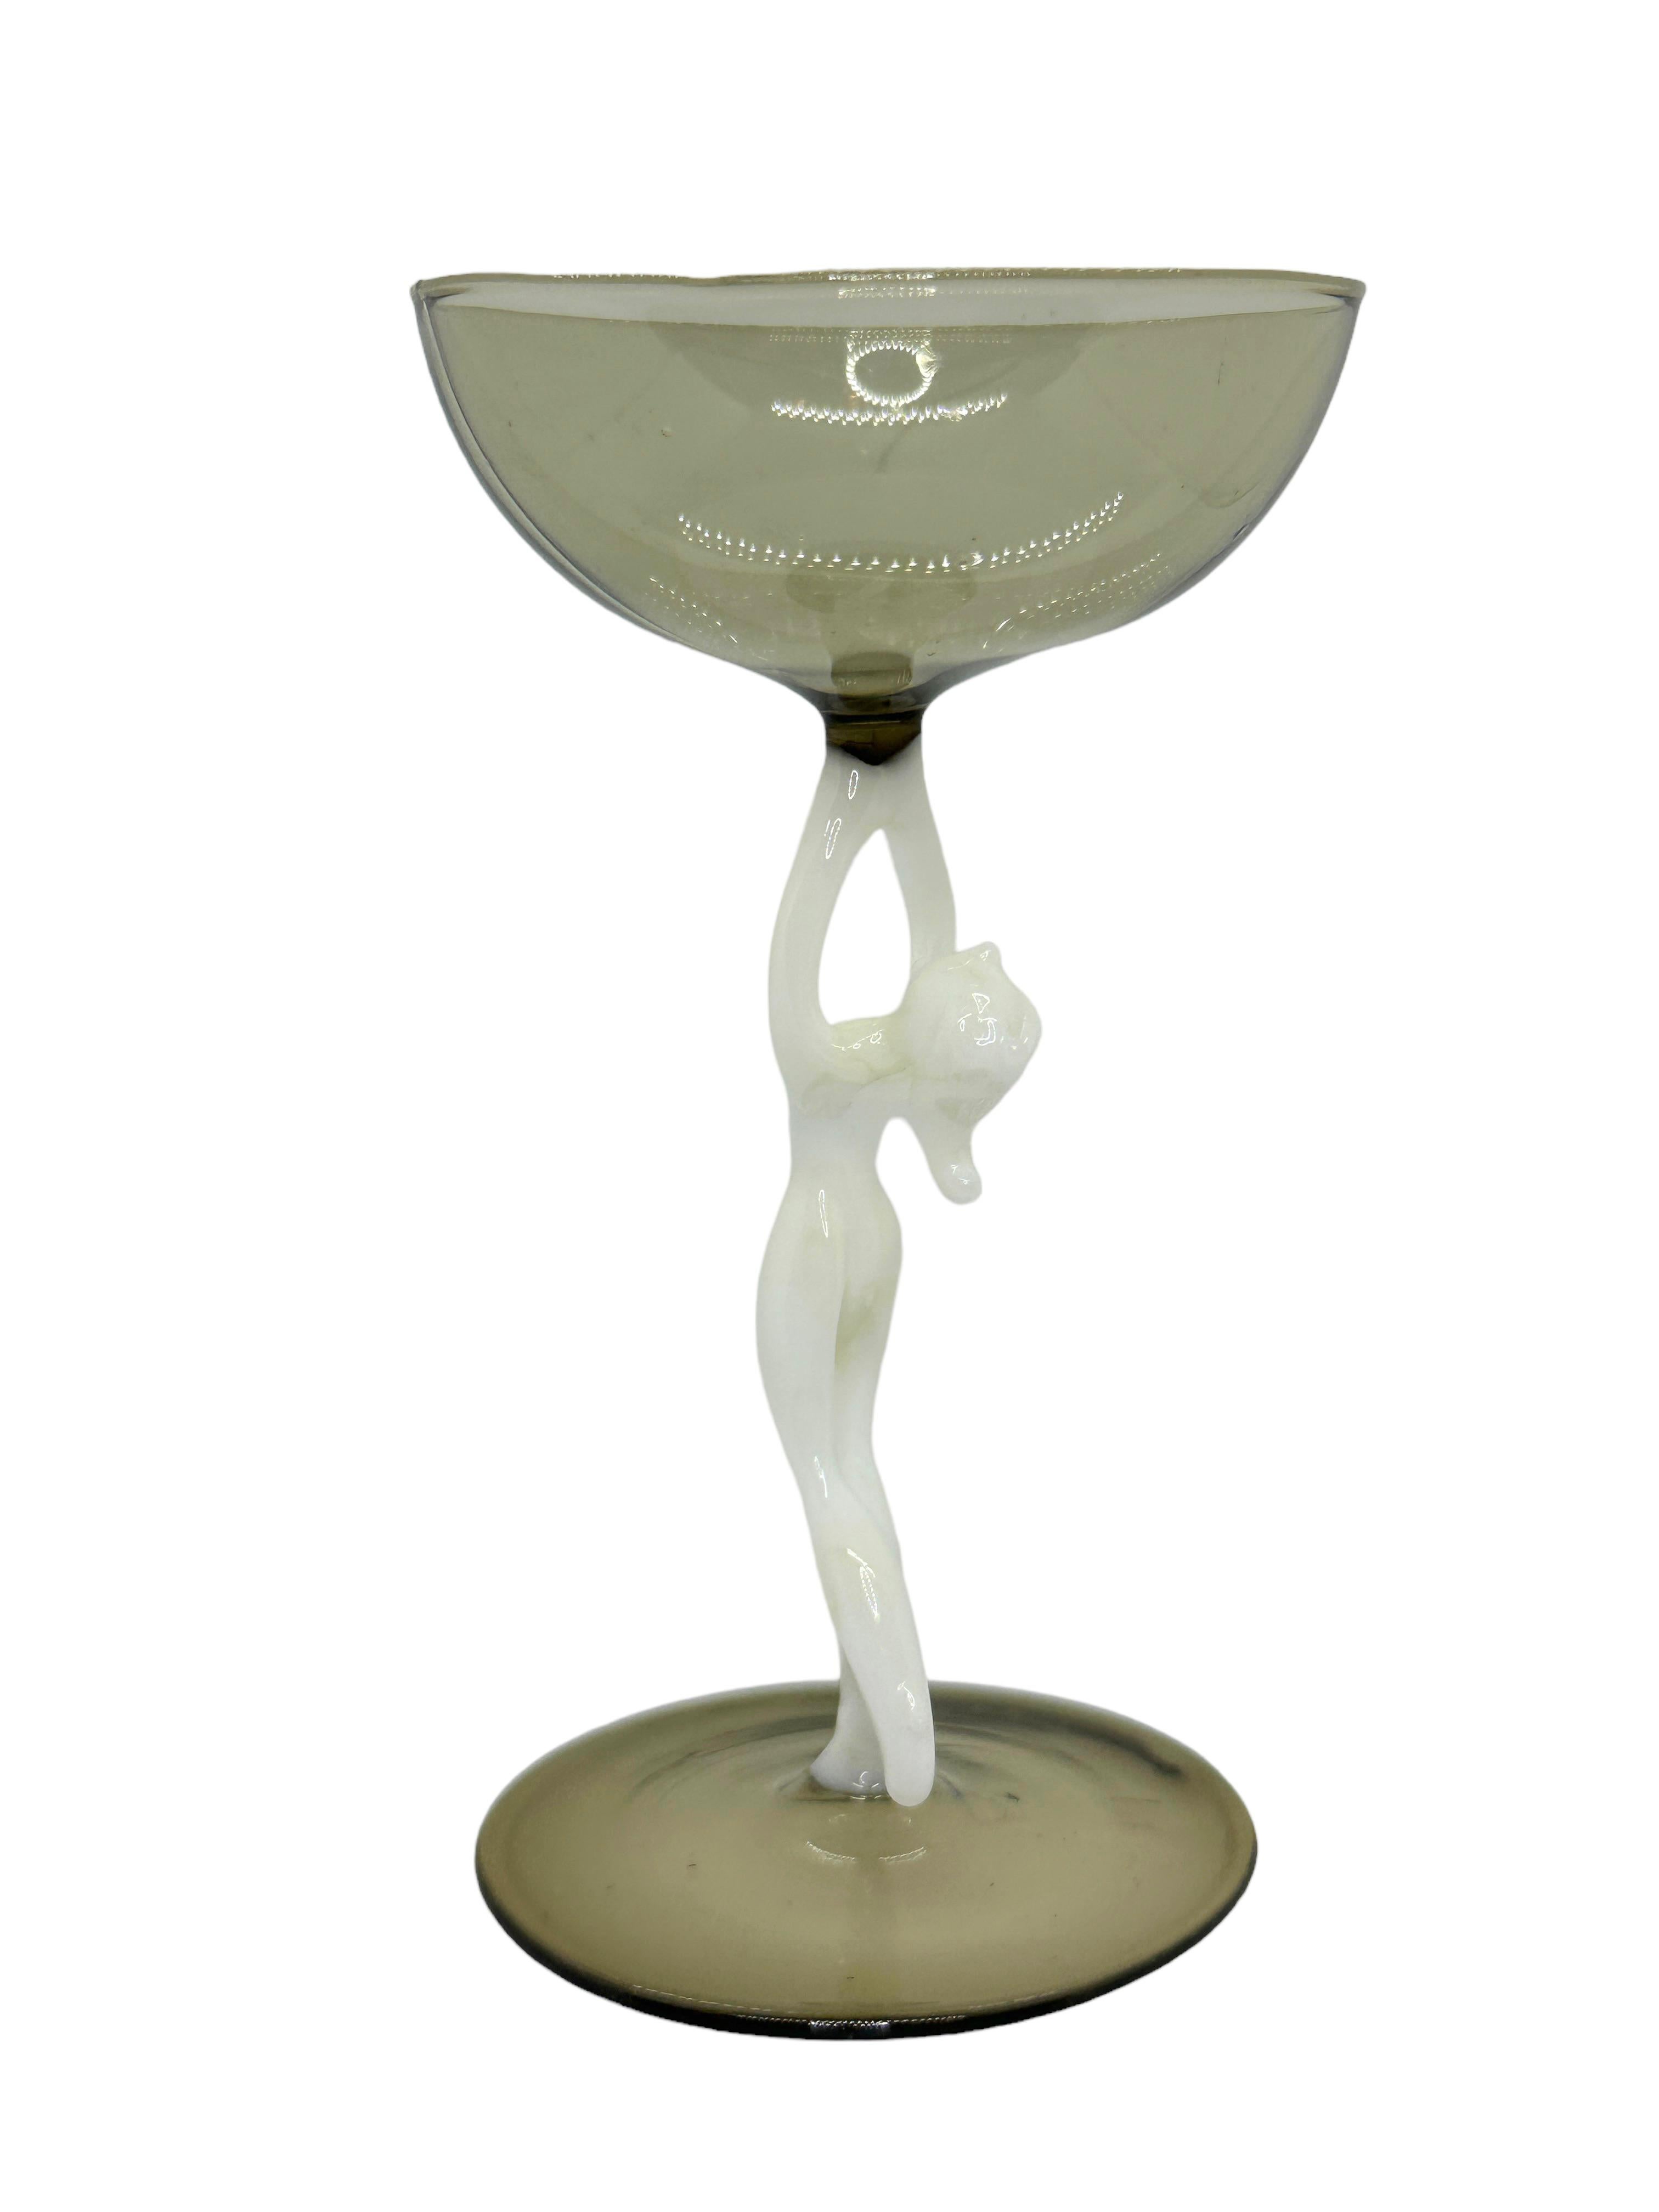 Dies ist ein wunderschönes Likörglas mit einem Stiel aus Österreich. Sie hat einen nackten Frauenschaft und ist im Bimini-Stil gehalten. Das Glas hat ein wunderschönes Design, auf dem Stiel ist eine nackte Dame in weißer Farbe abgebildet. Der Sockel